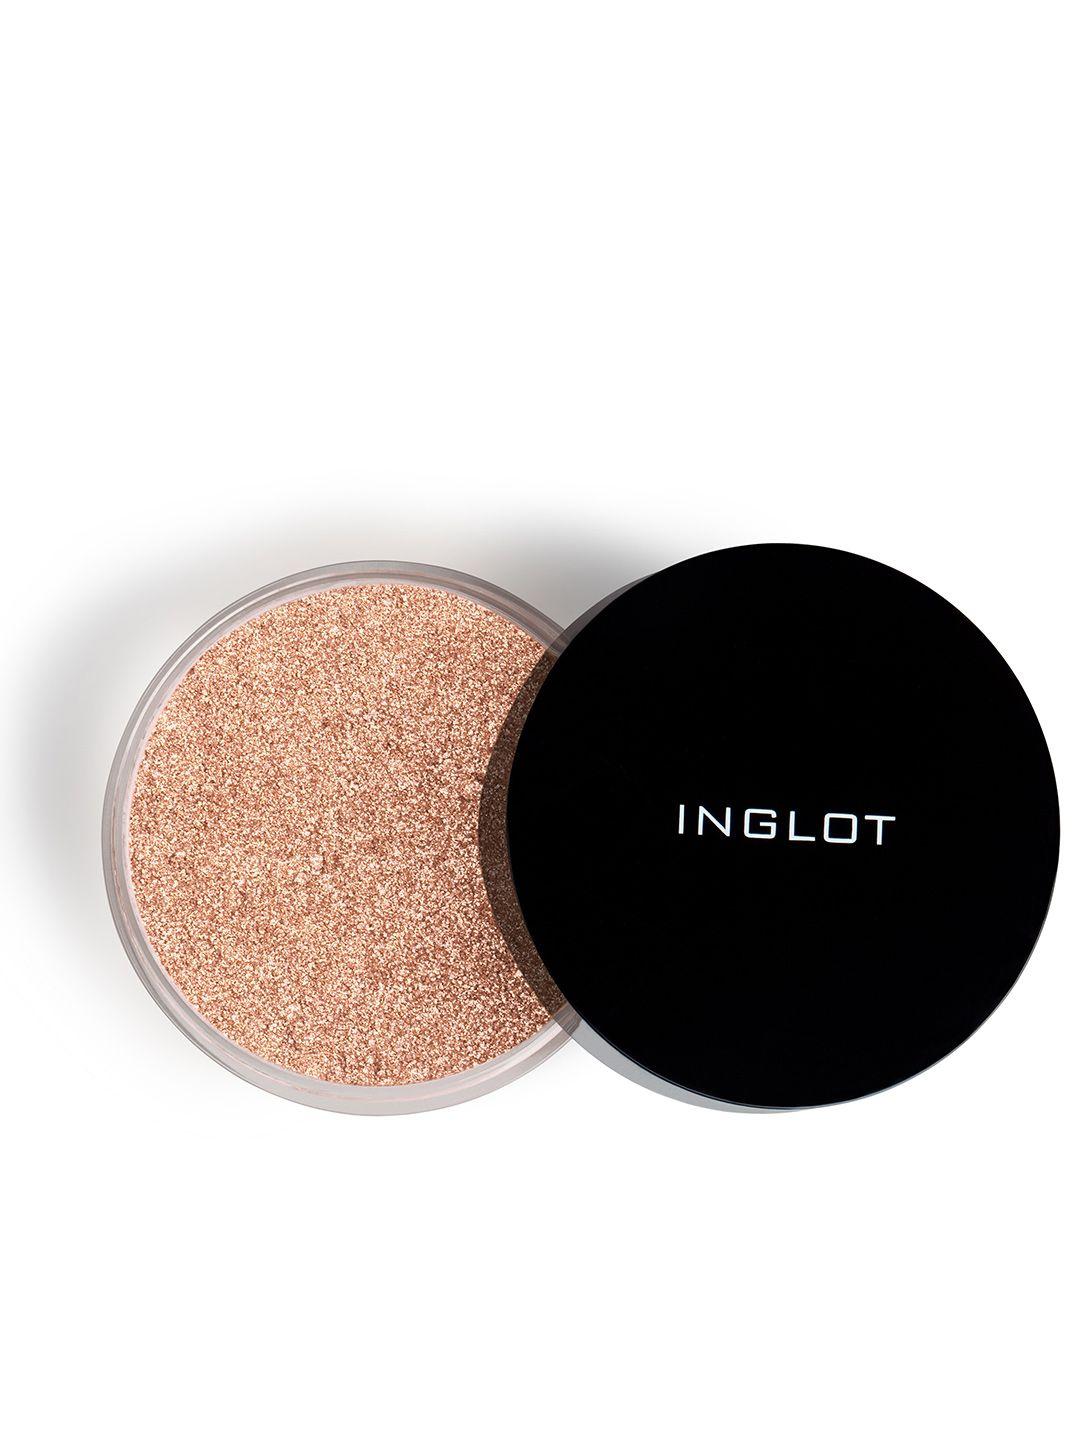 inglot-sparkling-dust-feb-2.5g---light-pink-07